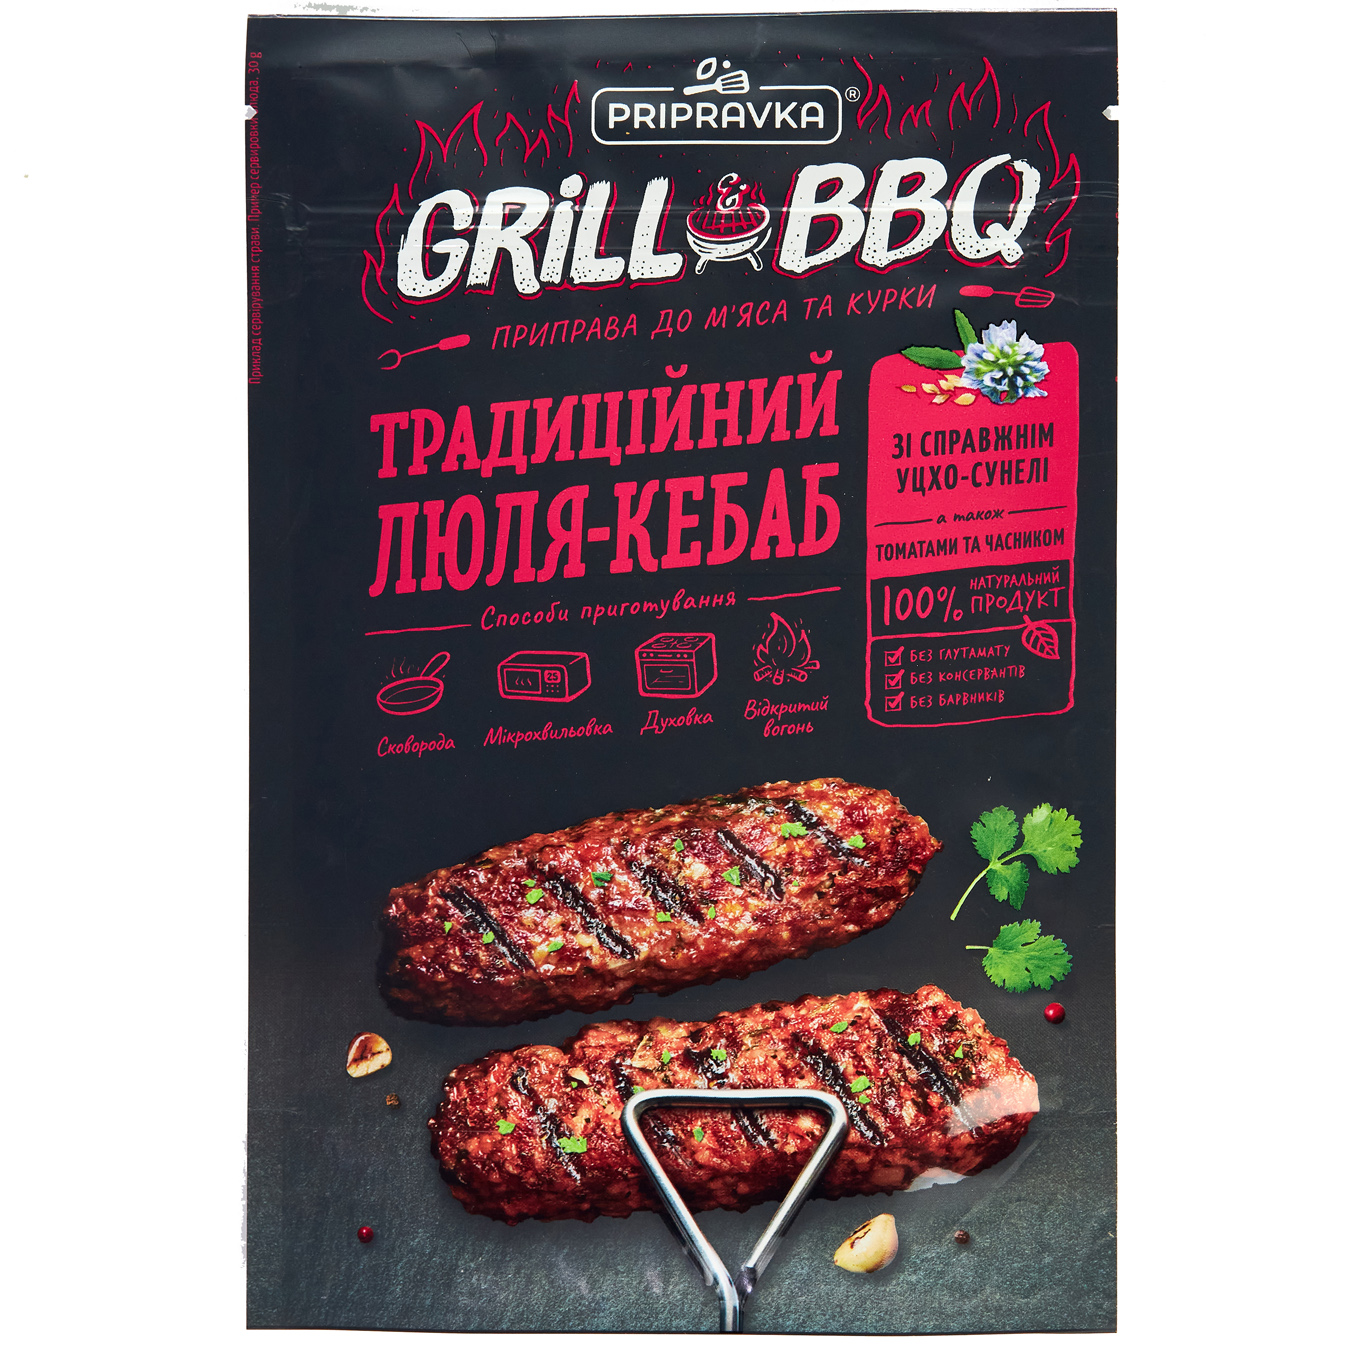 Приправа Pripravka Grill & BBQ для м'яса і курки Традиційний люля-кебаб з справжнім уцхо-сунелі, томатами і часник 30г